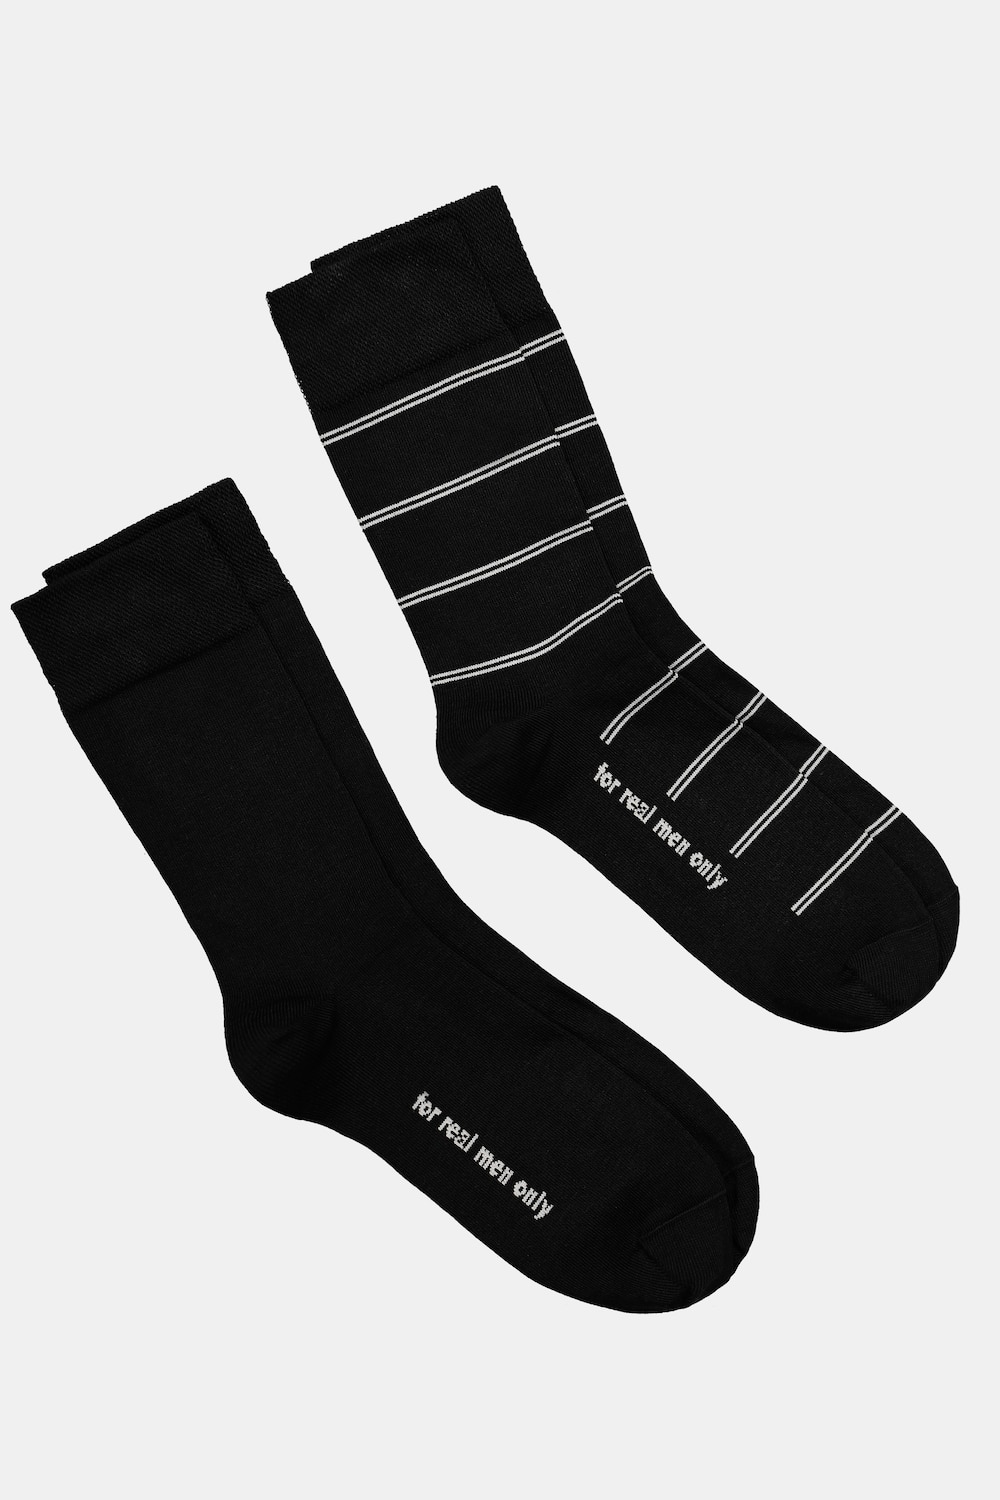 Große Größen JP1880 Socken, Herren, schwarz, Größe: 43-46, Baumwolle/Synthetische Fasern, JP1880 von JP1880